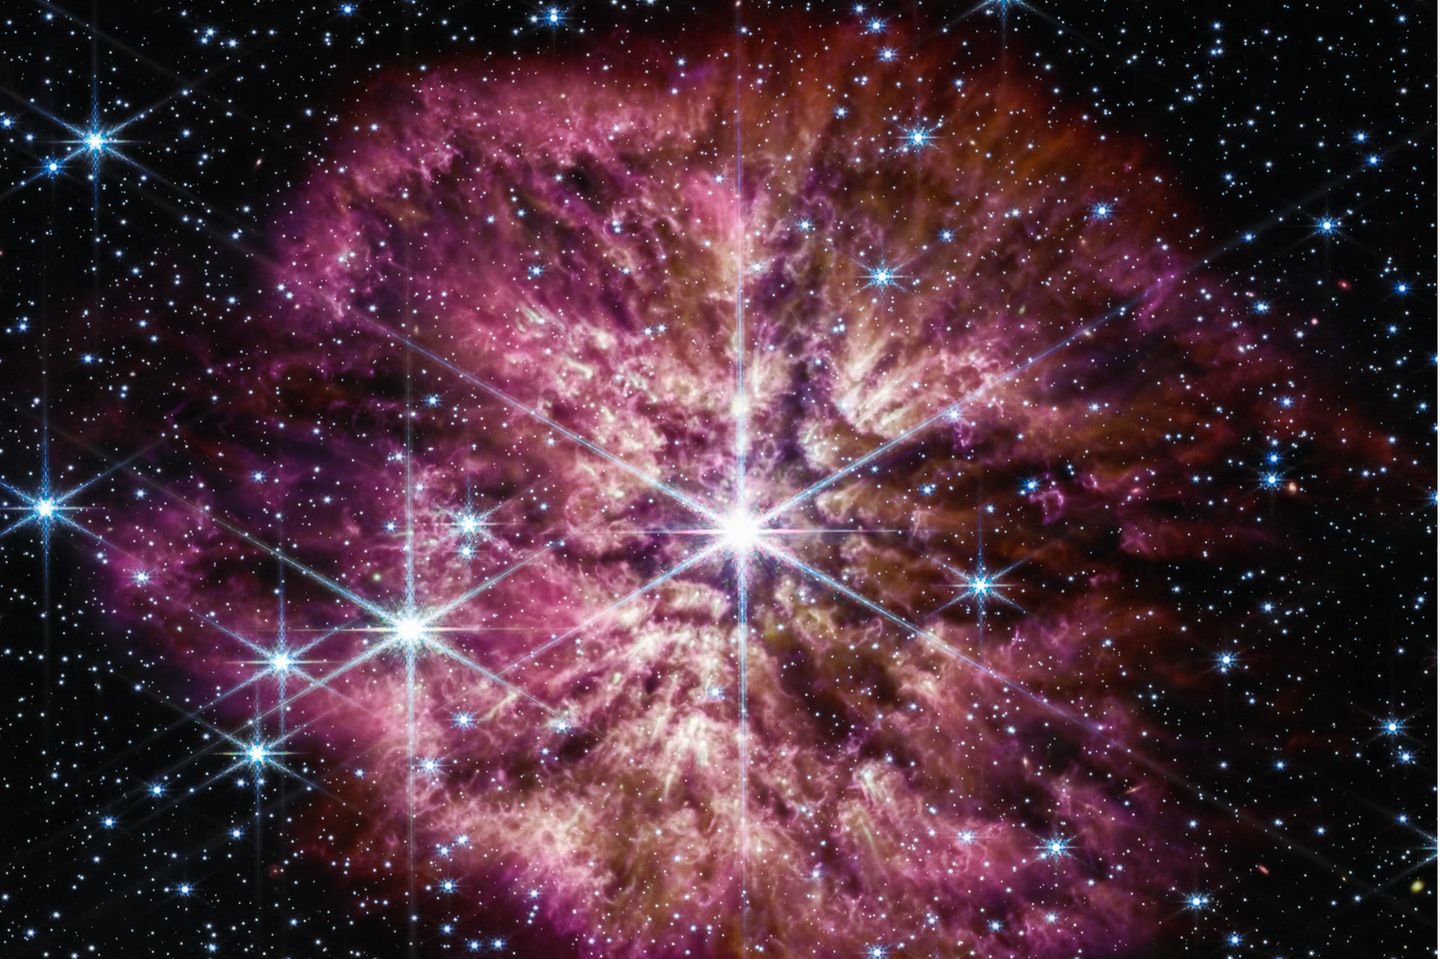 Ein Stern an der Schwelle zum Tod: WR 124 befindet sich in der Wolf-Rayet-Phase, wirft also seine äußeren Schichten ab, bevor er zur Supernova wird, hell aufleuchtet und stirbt. Die jüngst von der Nasa veröffentlichte Aufnahme des James-Webb-Teleskops ist auch eine Zeitreise – zwischen WR 124 und der Erde liegen etwa 15 000 Lichtjahre